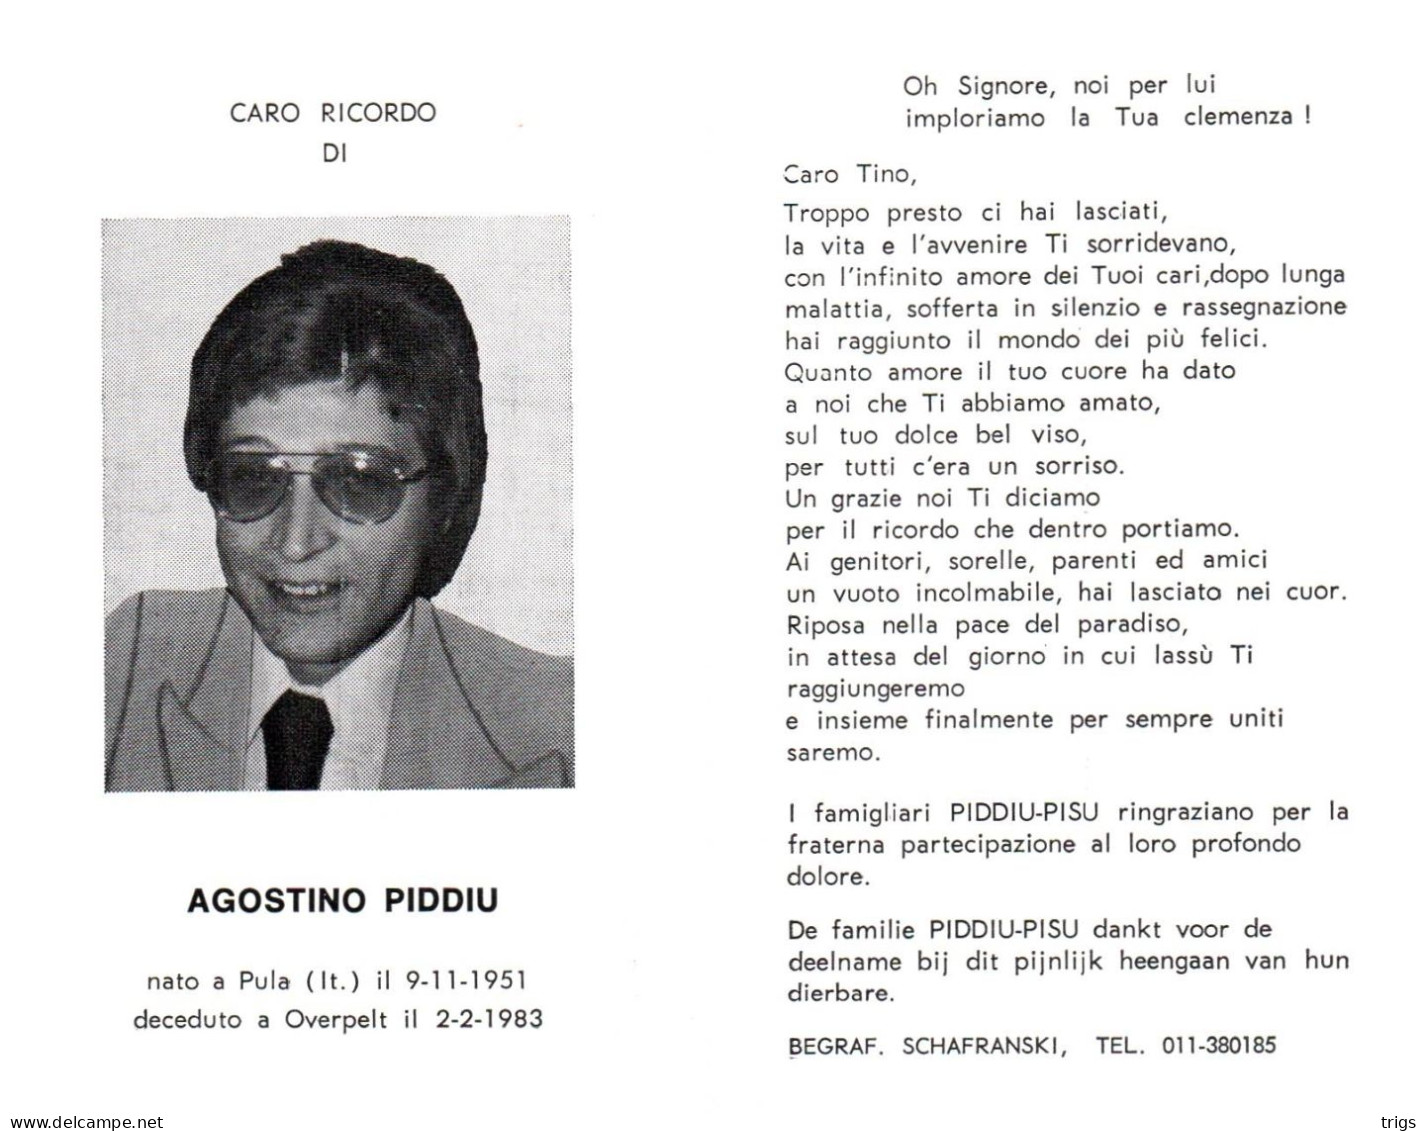 Agostino Piddiu (1951-1983) - Images Religieuses